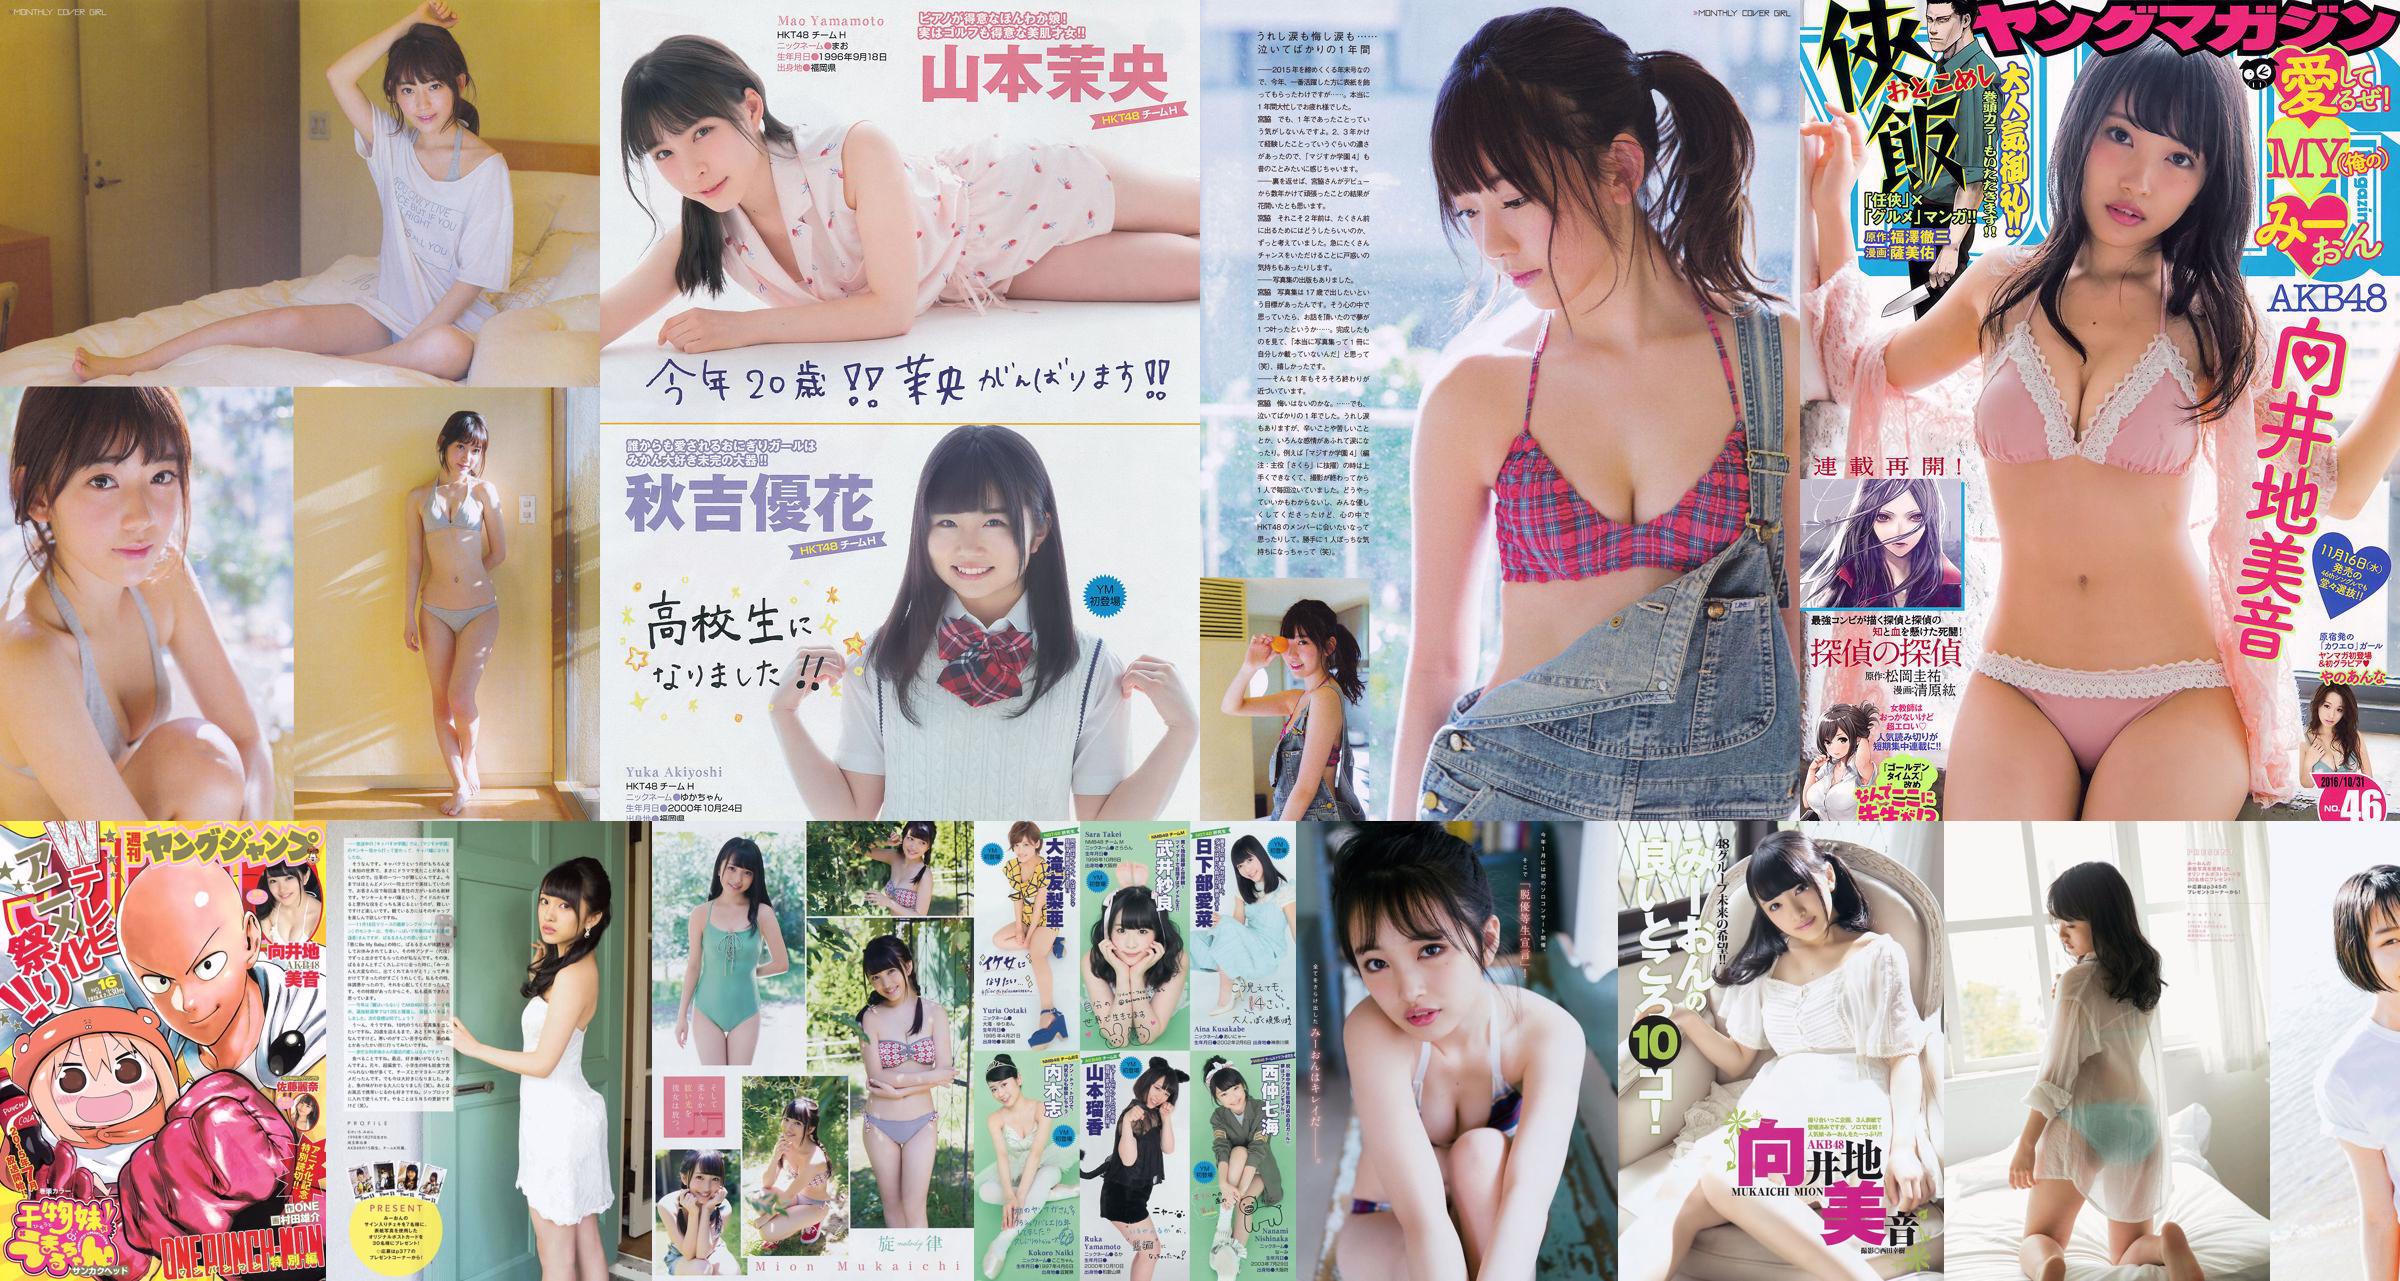 [Young Magazine] Mukaiji nr 28 Photo Magazine 2016 No.8df16b Strona 2